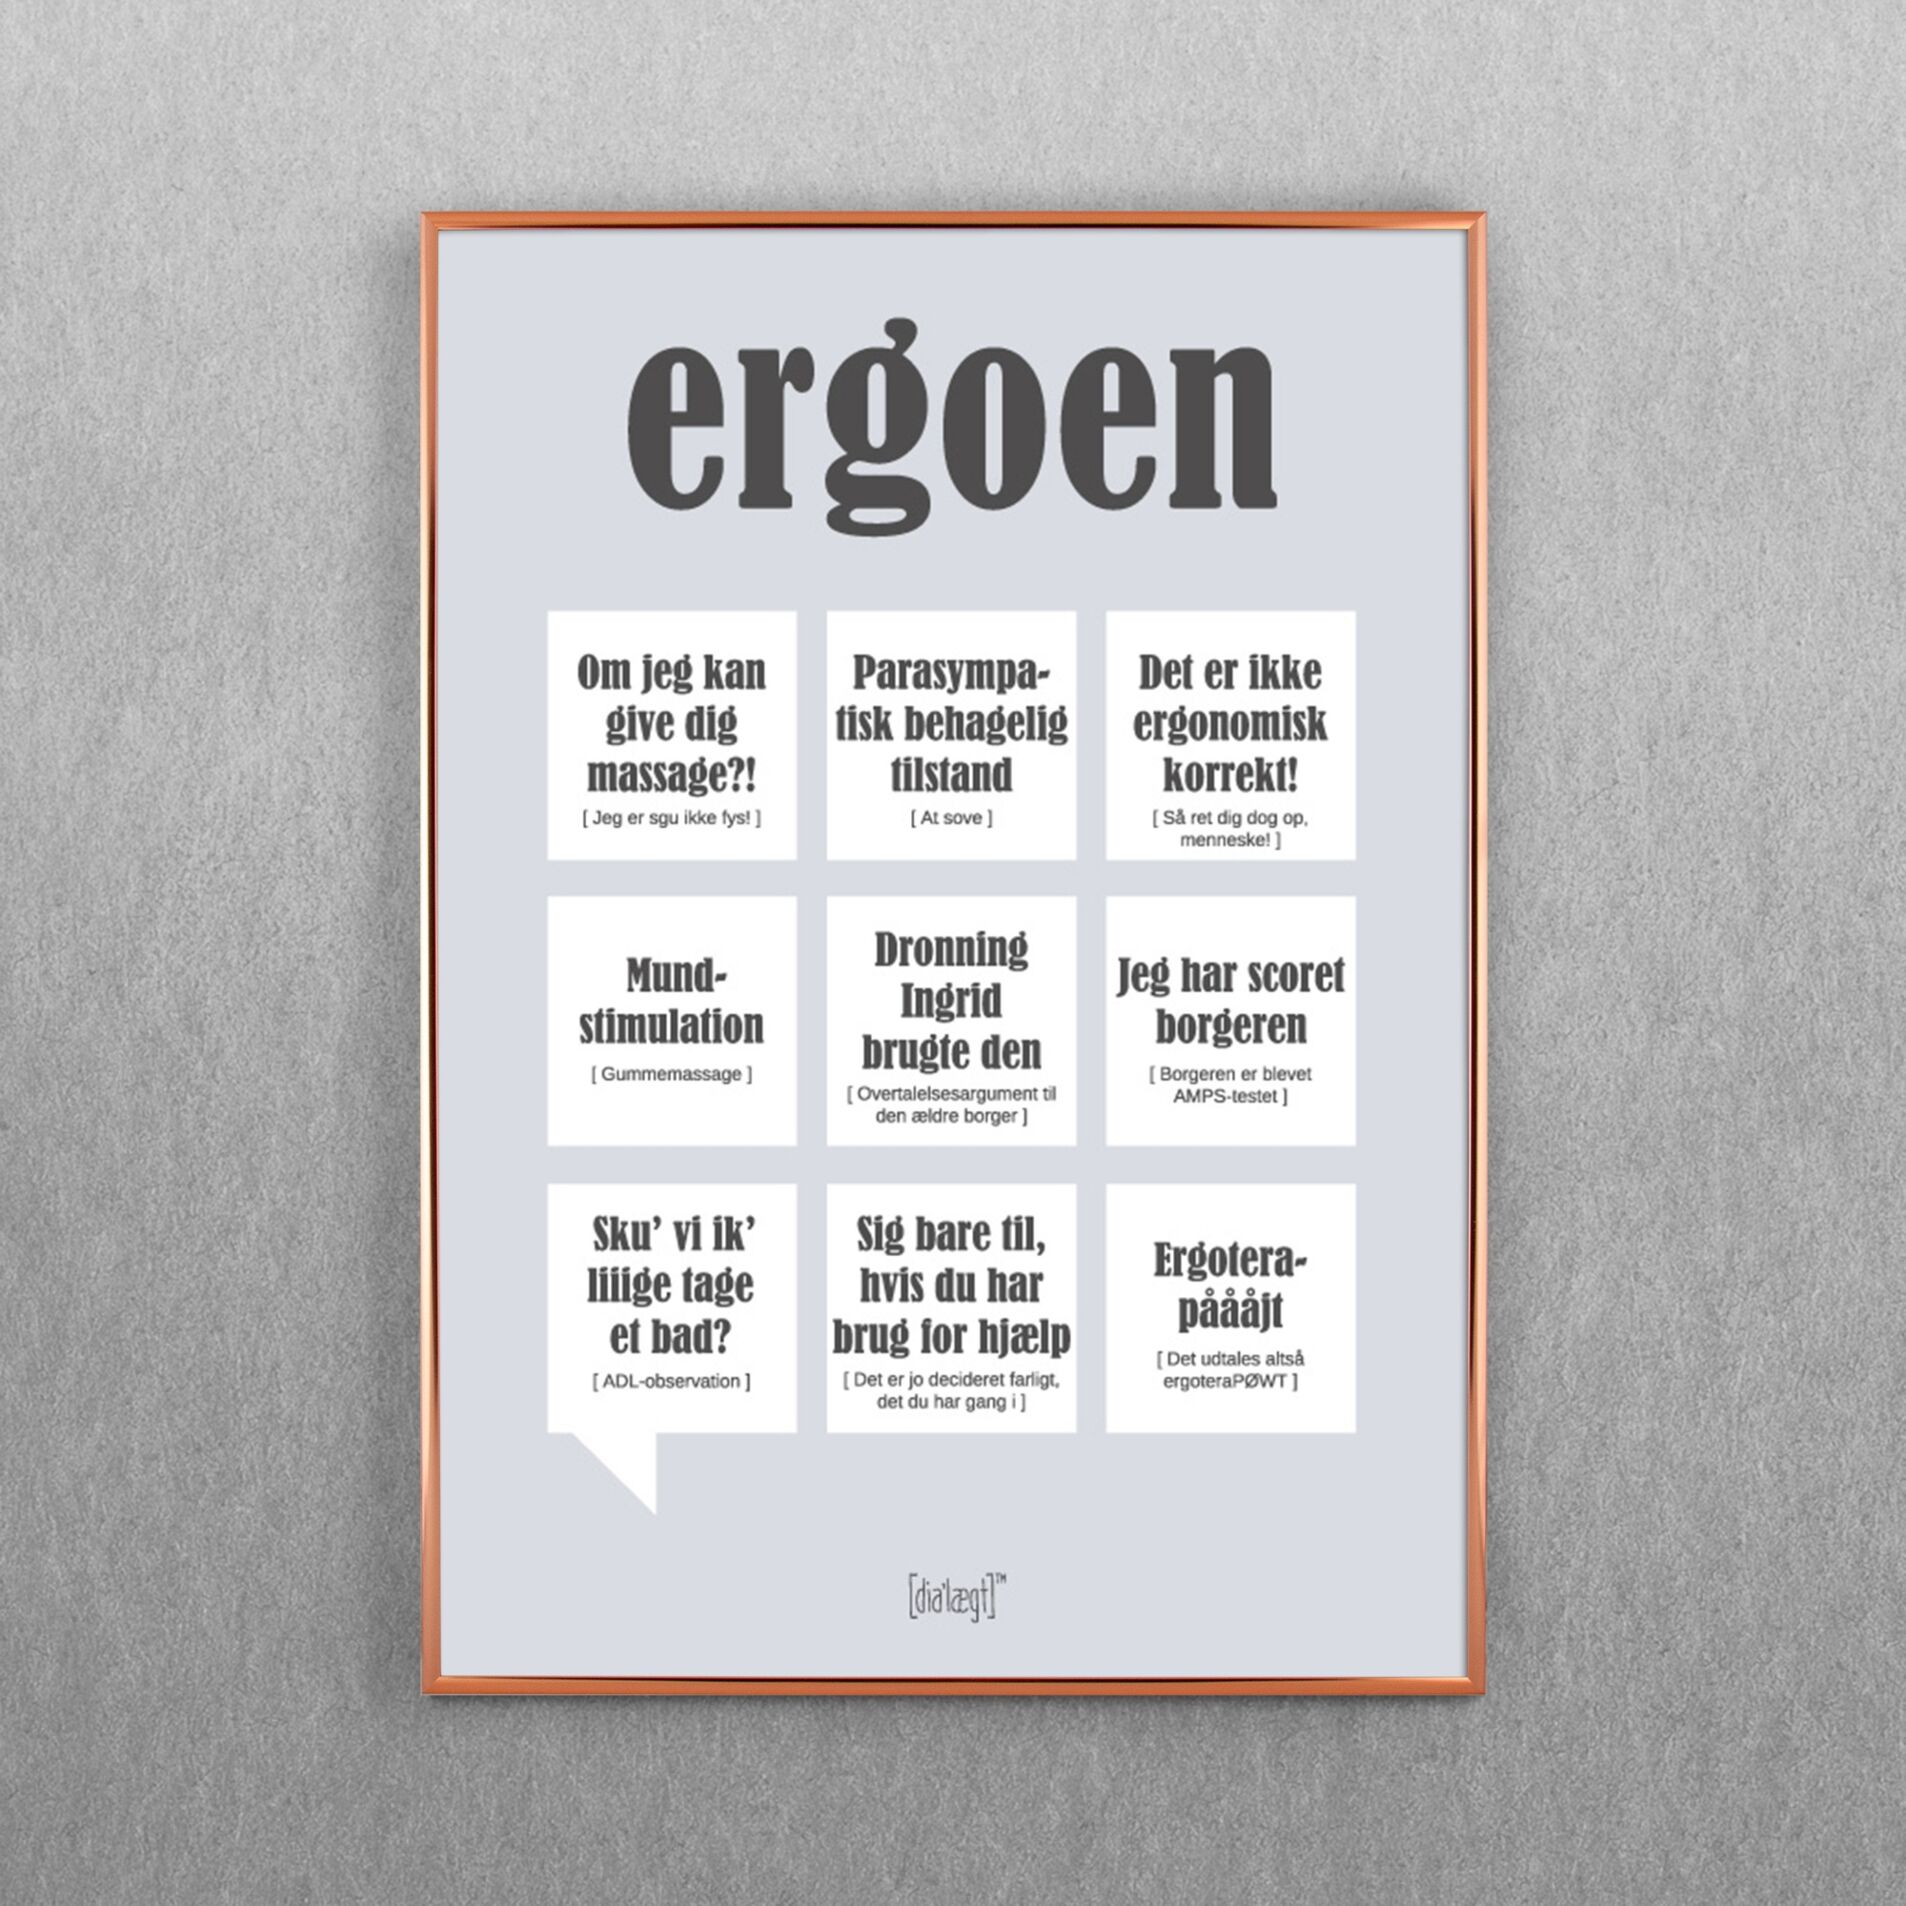 Ergoen - Humoristisk og stilren plakatdesign til